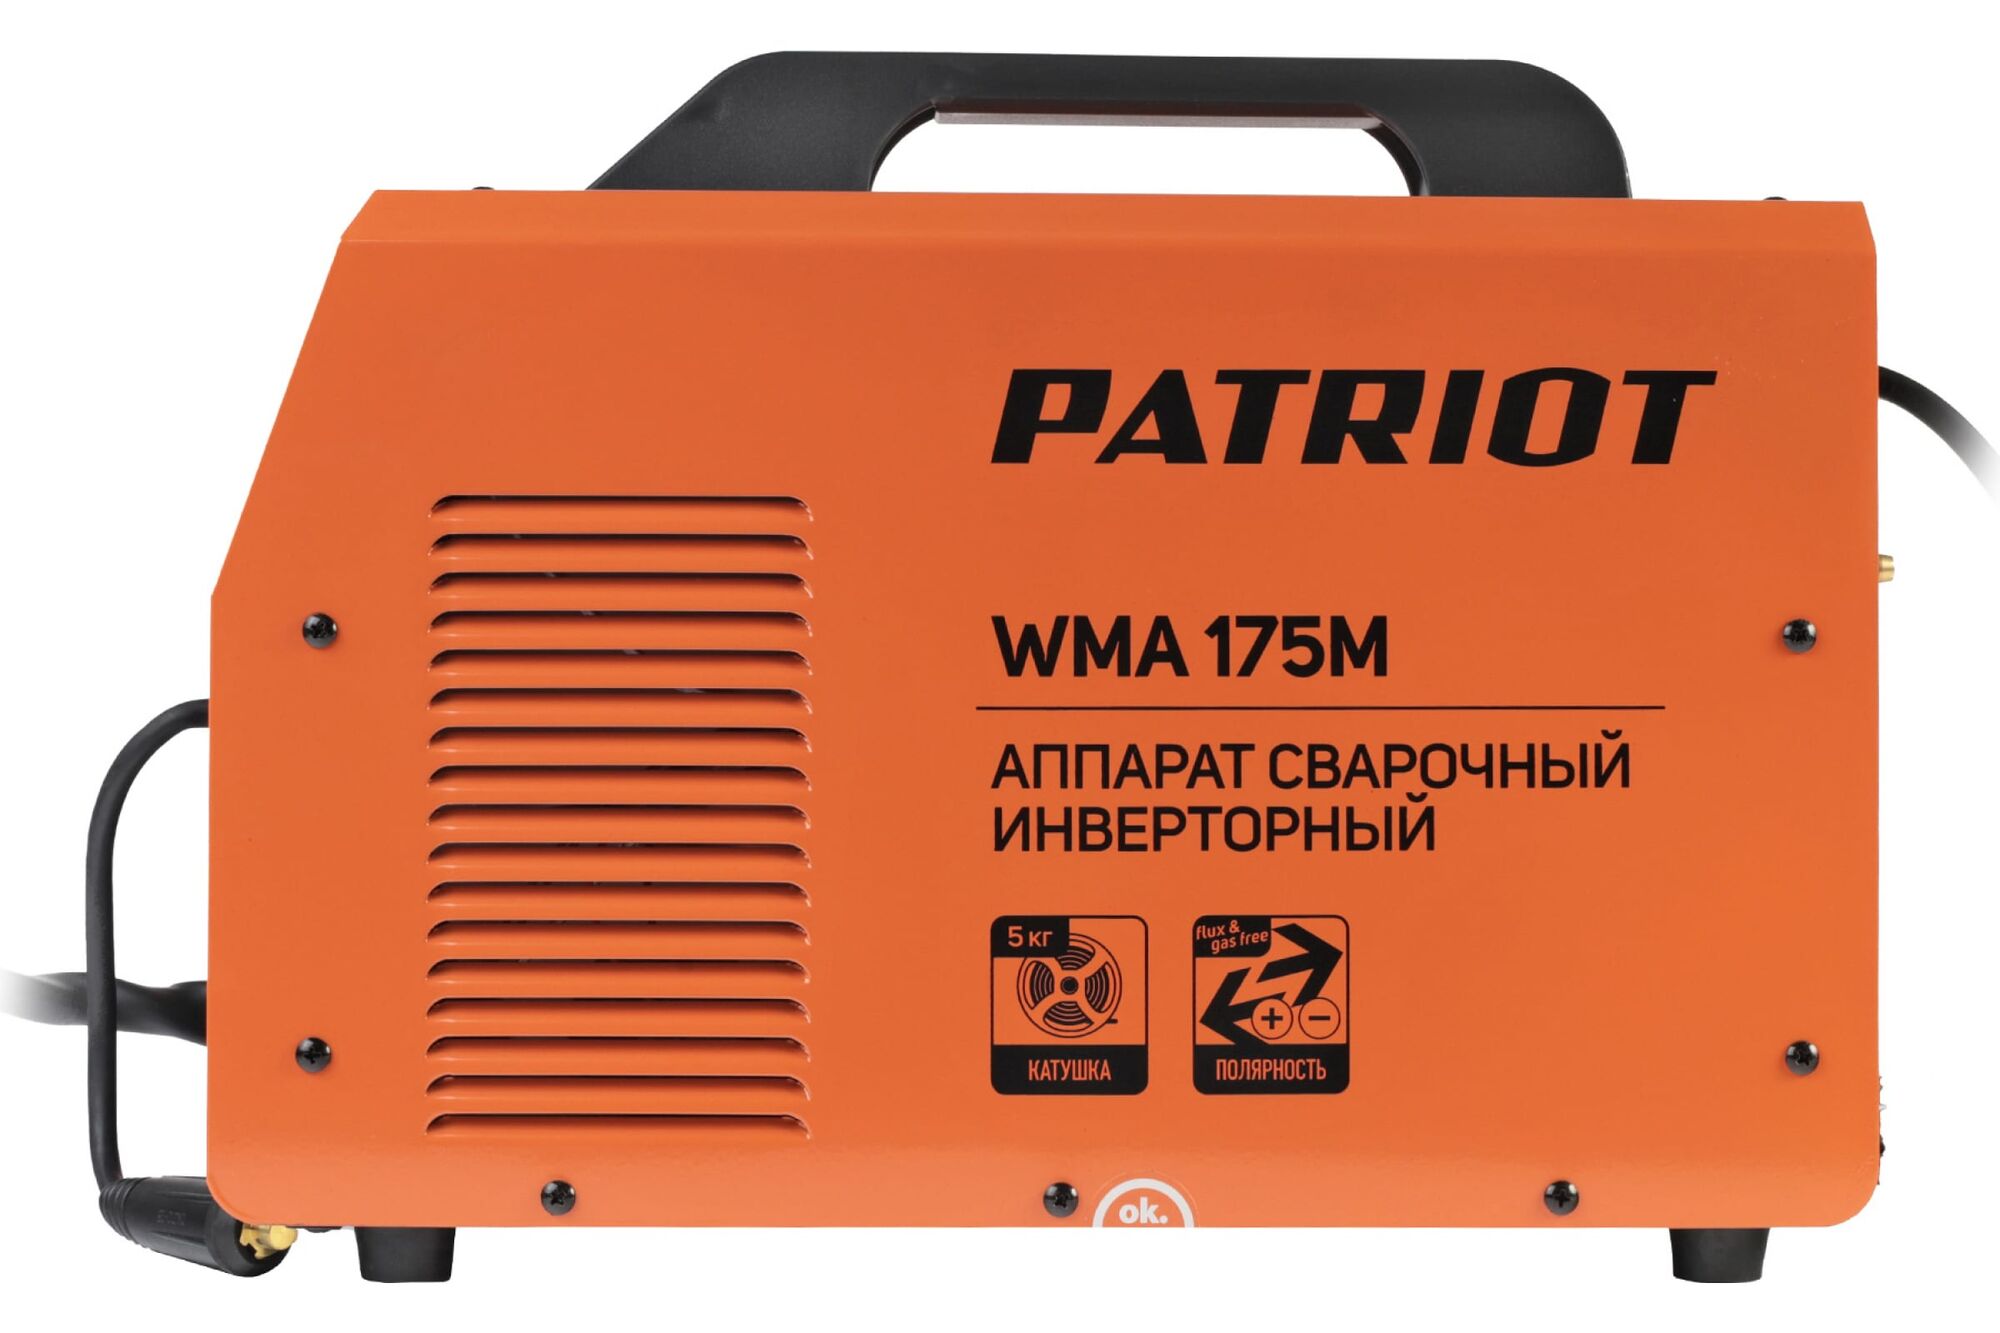 Сварочный инверторный полуавтомат PATRIOT WMA 175M MIG/MAG/MMA, полуавтоматическая сварка в среде 605302150 Patriot 9